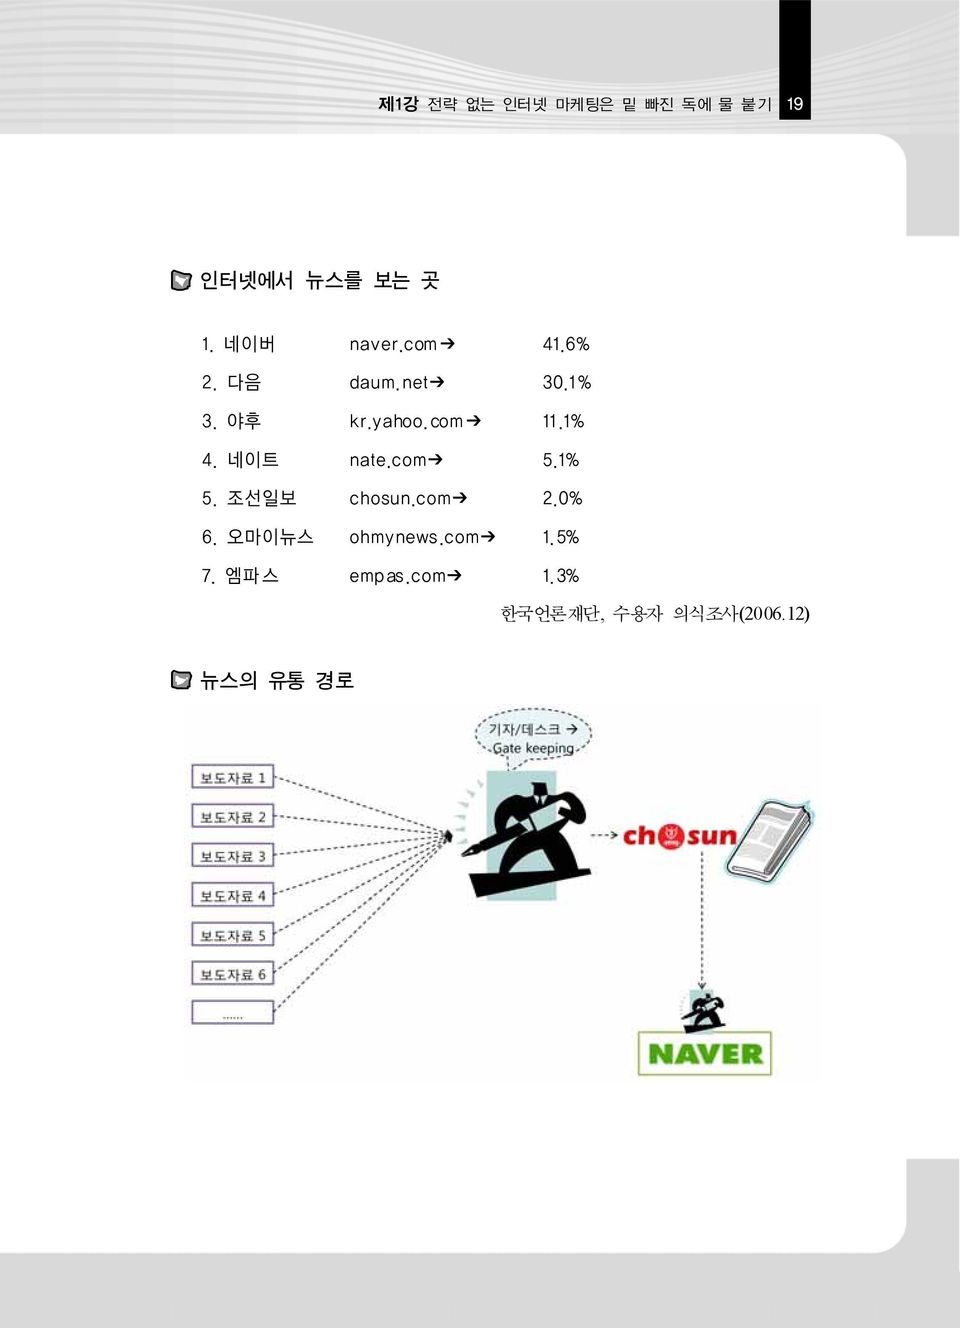 com 11.1% 4. 네이트 nate.com 5.1% 5. 조선일보 chosun.com 2.0% 6.